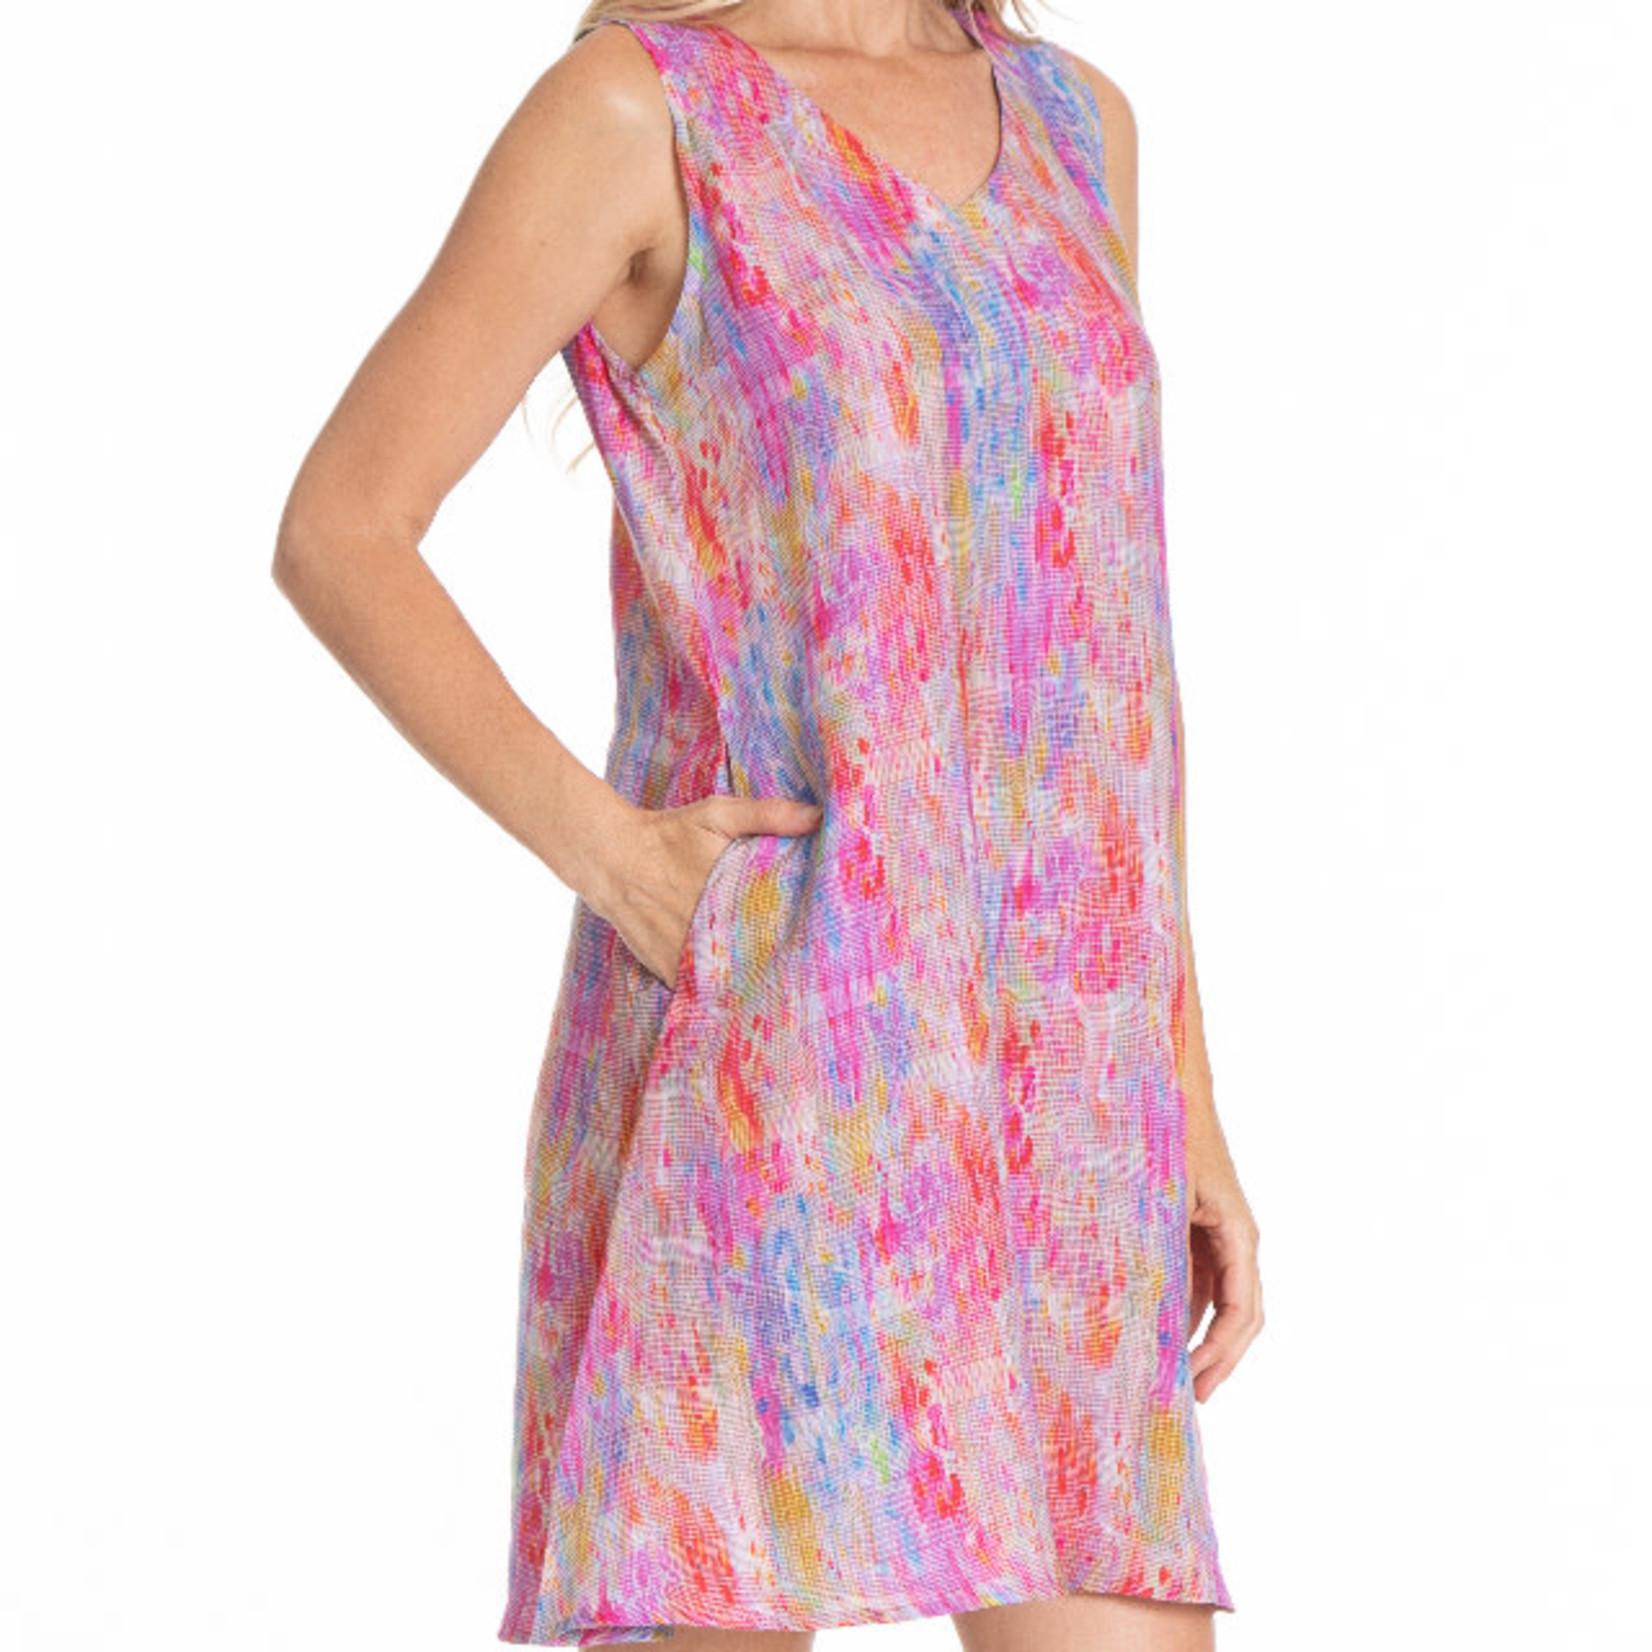 APNY Bright Pixel Print V Neck Sleeveless Dress